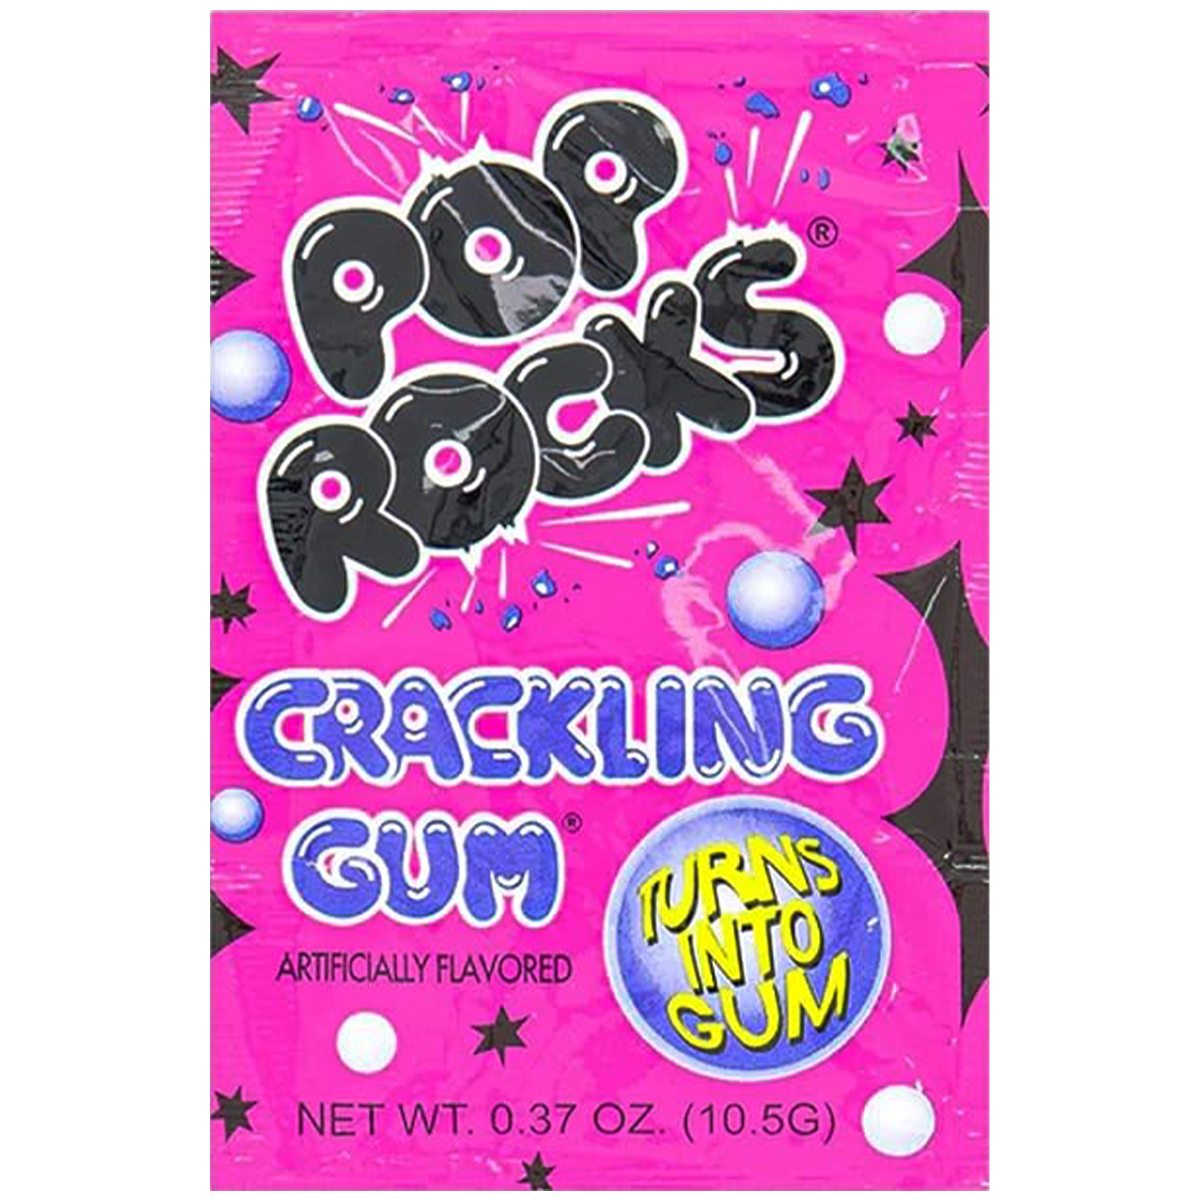 Pop Rocks - Bubble Gum